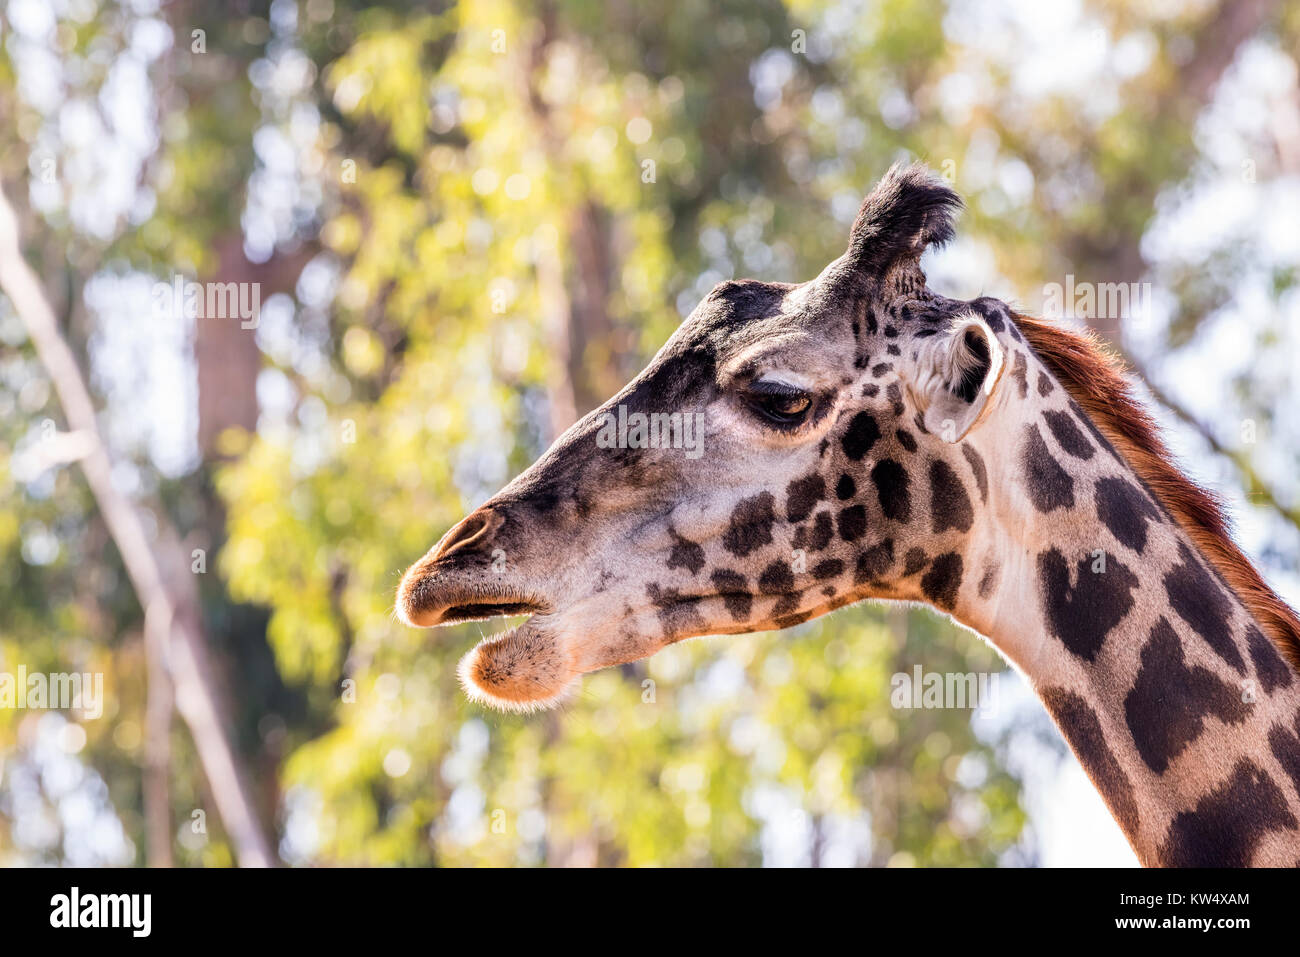 Une girafe camouflée, sauvages errant dans de grands arbres montre sa belle et grande, les yeux bruns. Banque D'Images